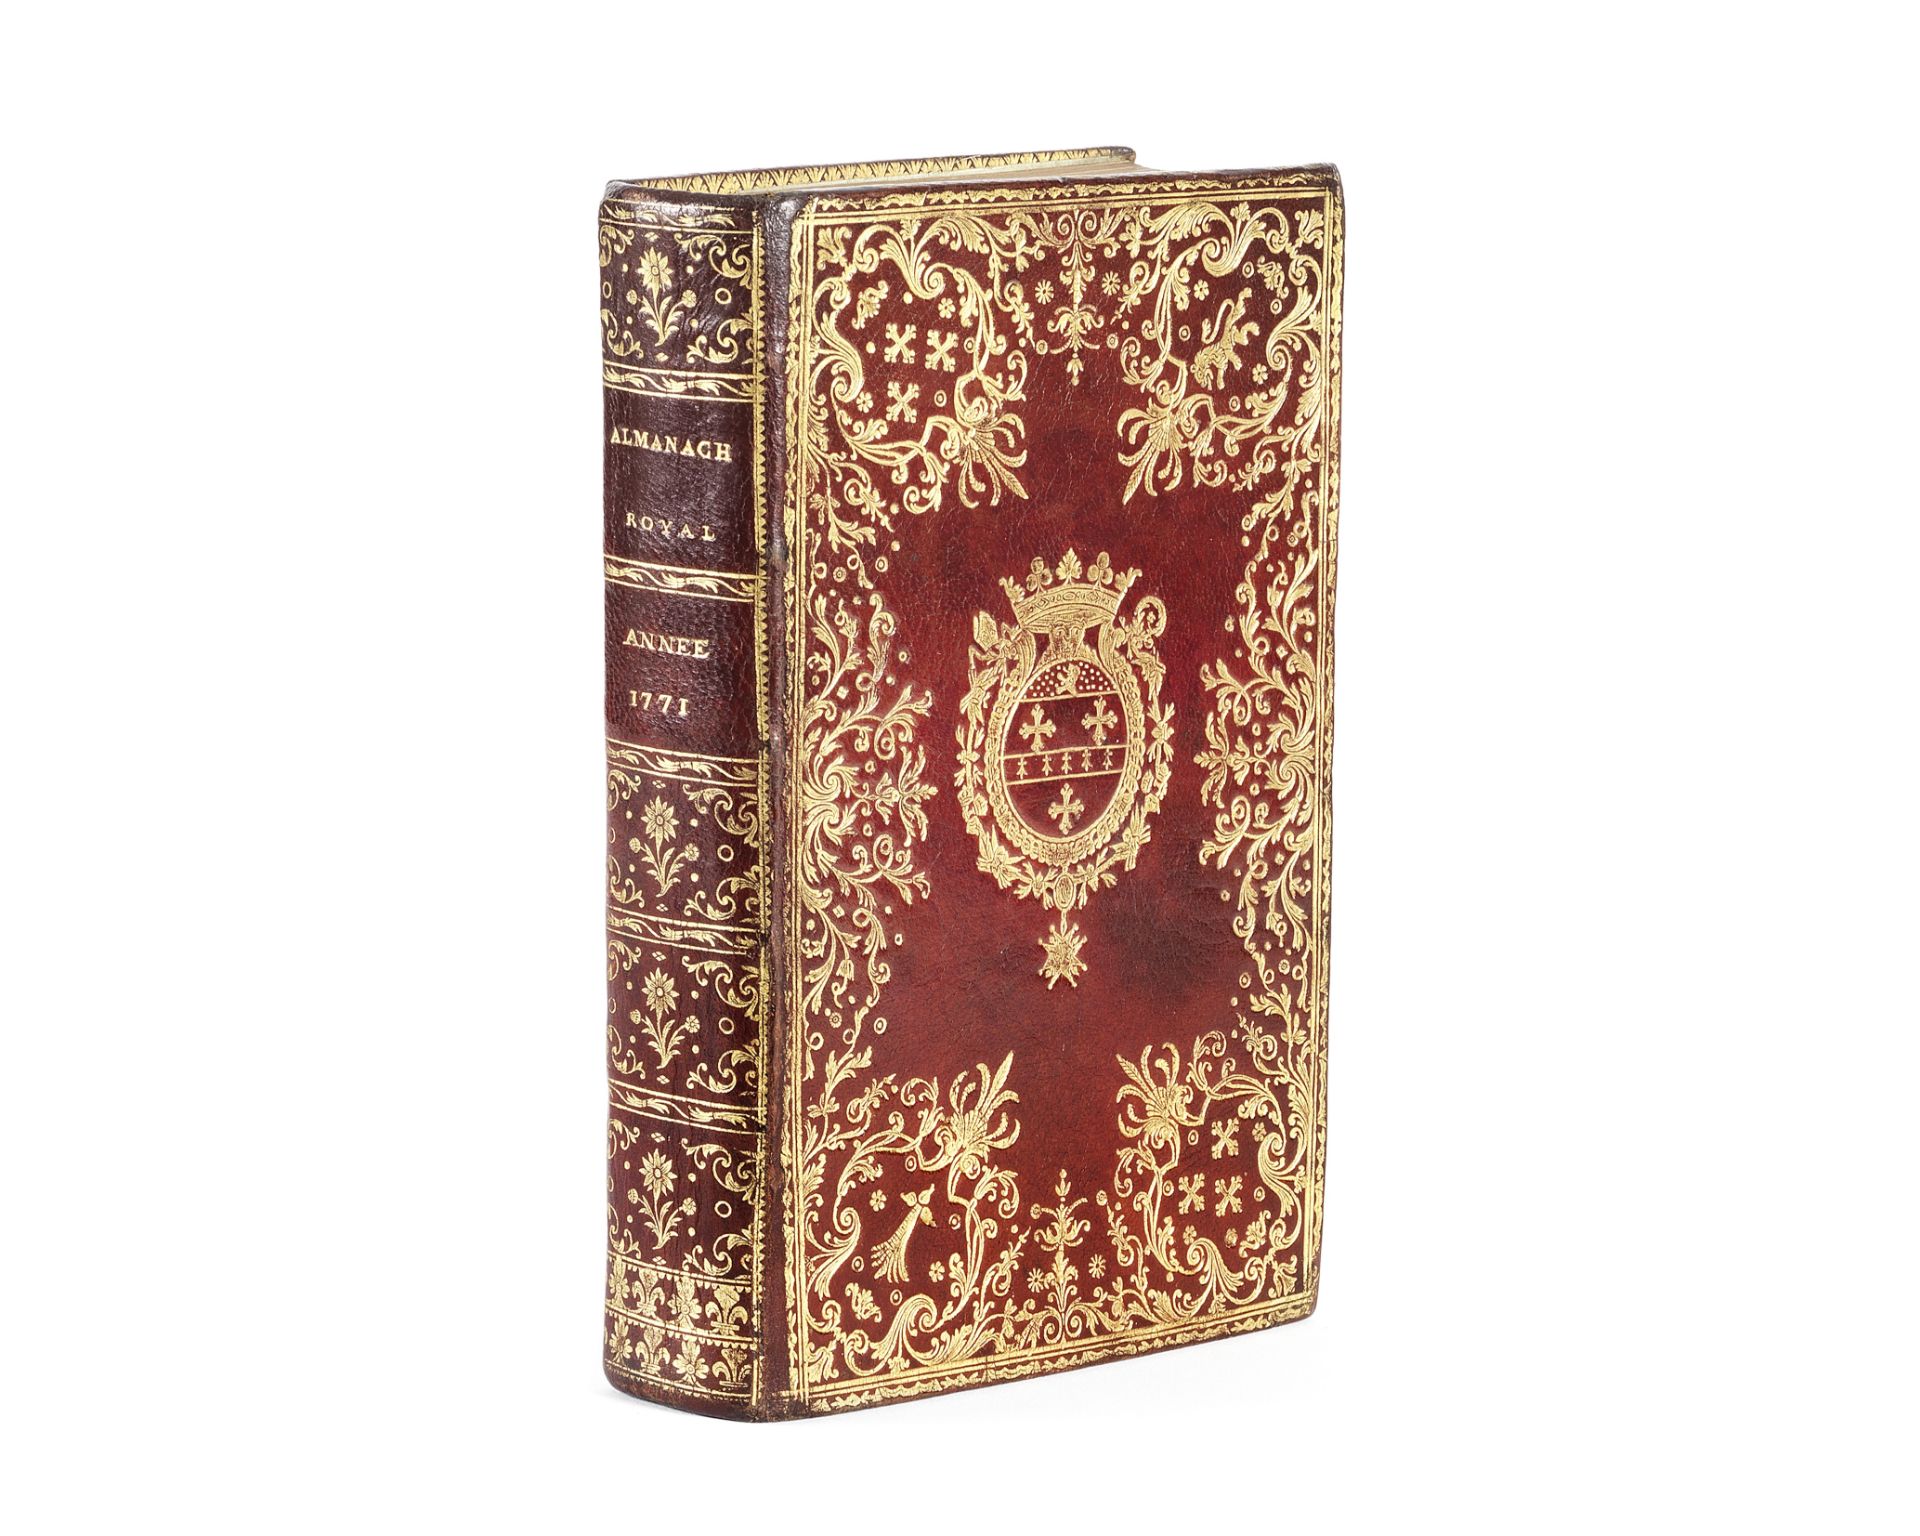 ALMANACH ROYAL Almanach royal pour l'année 1771, Paris, le Breton, 1771